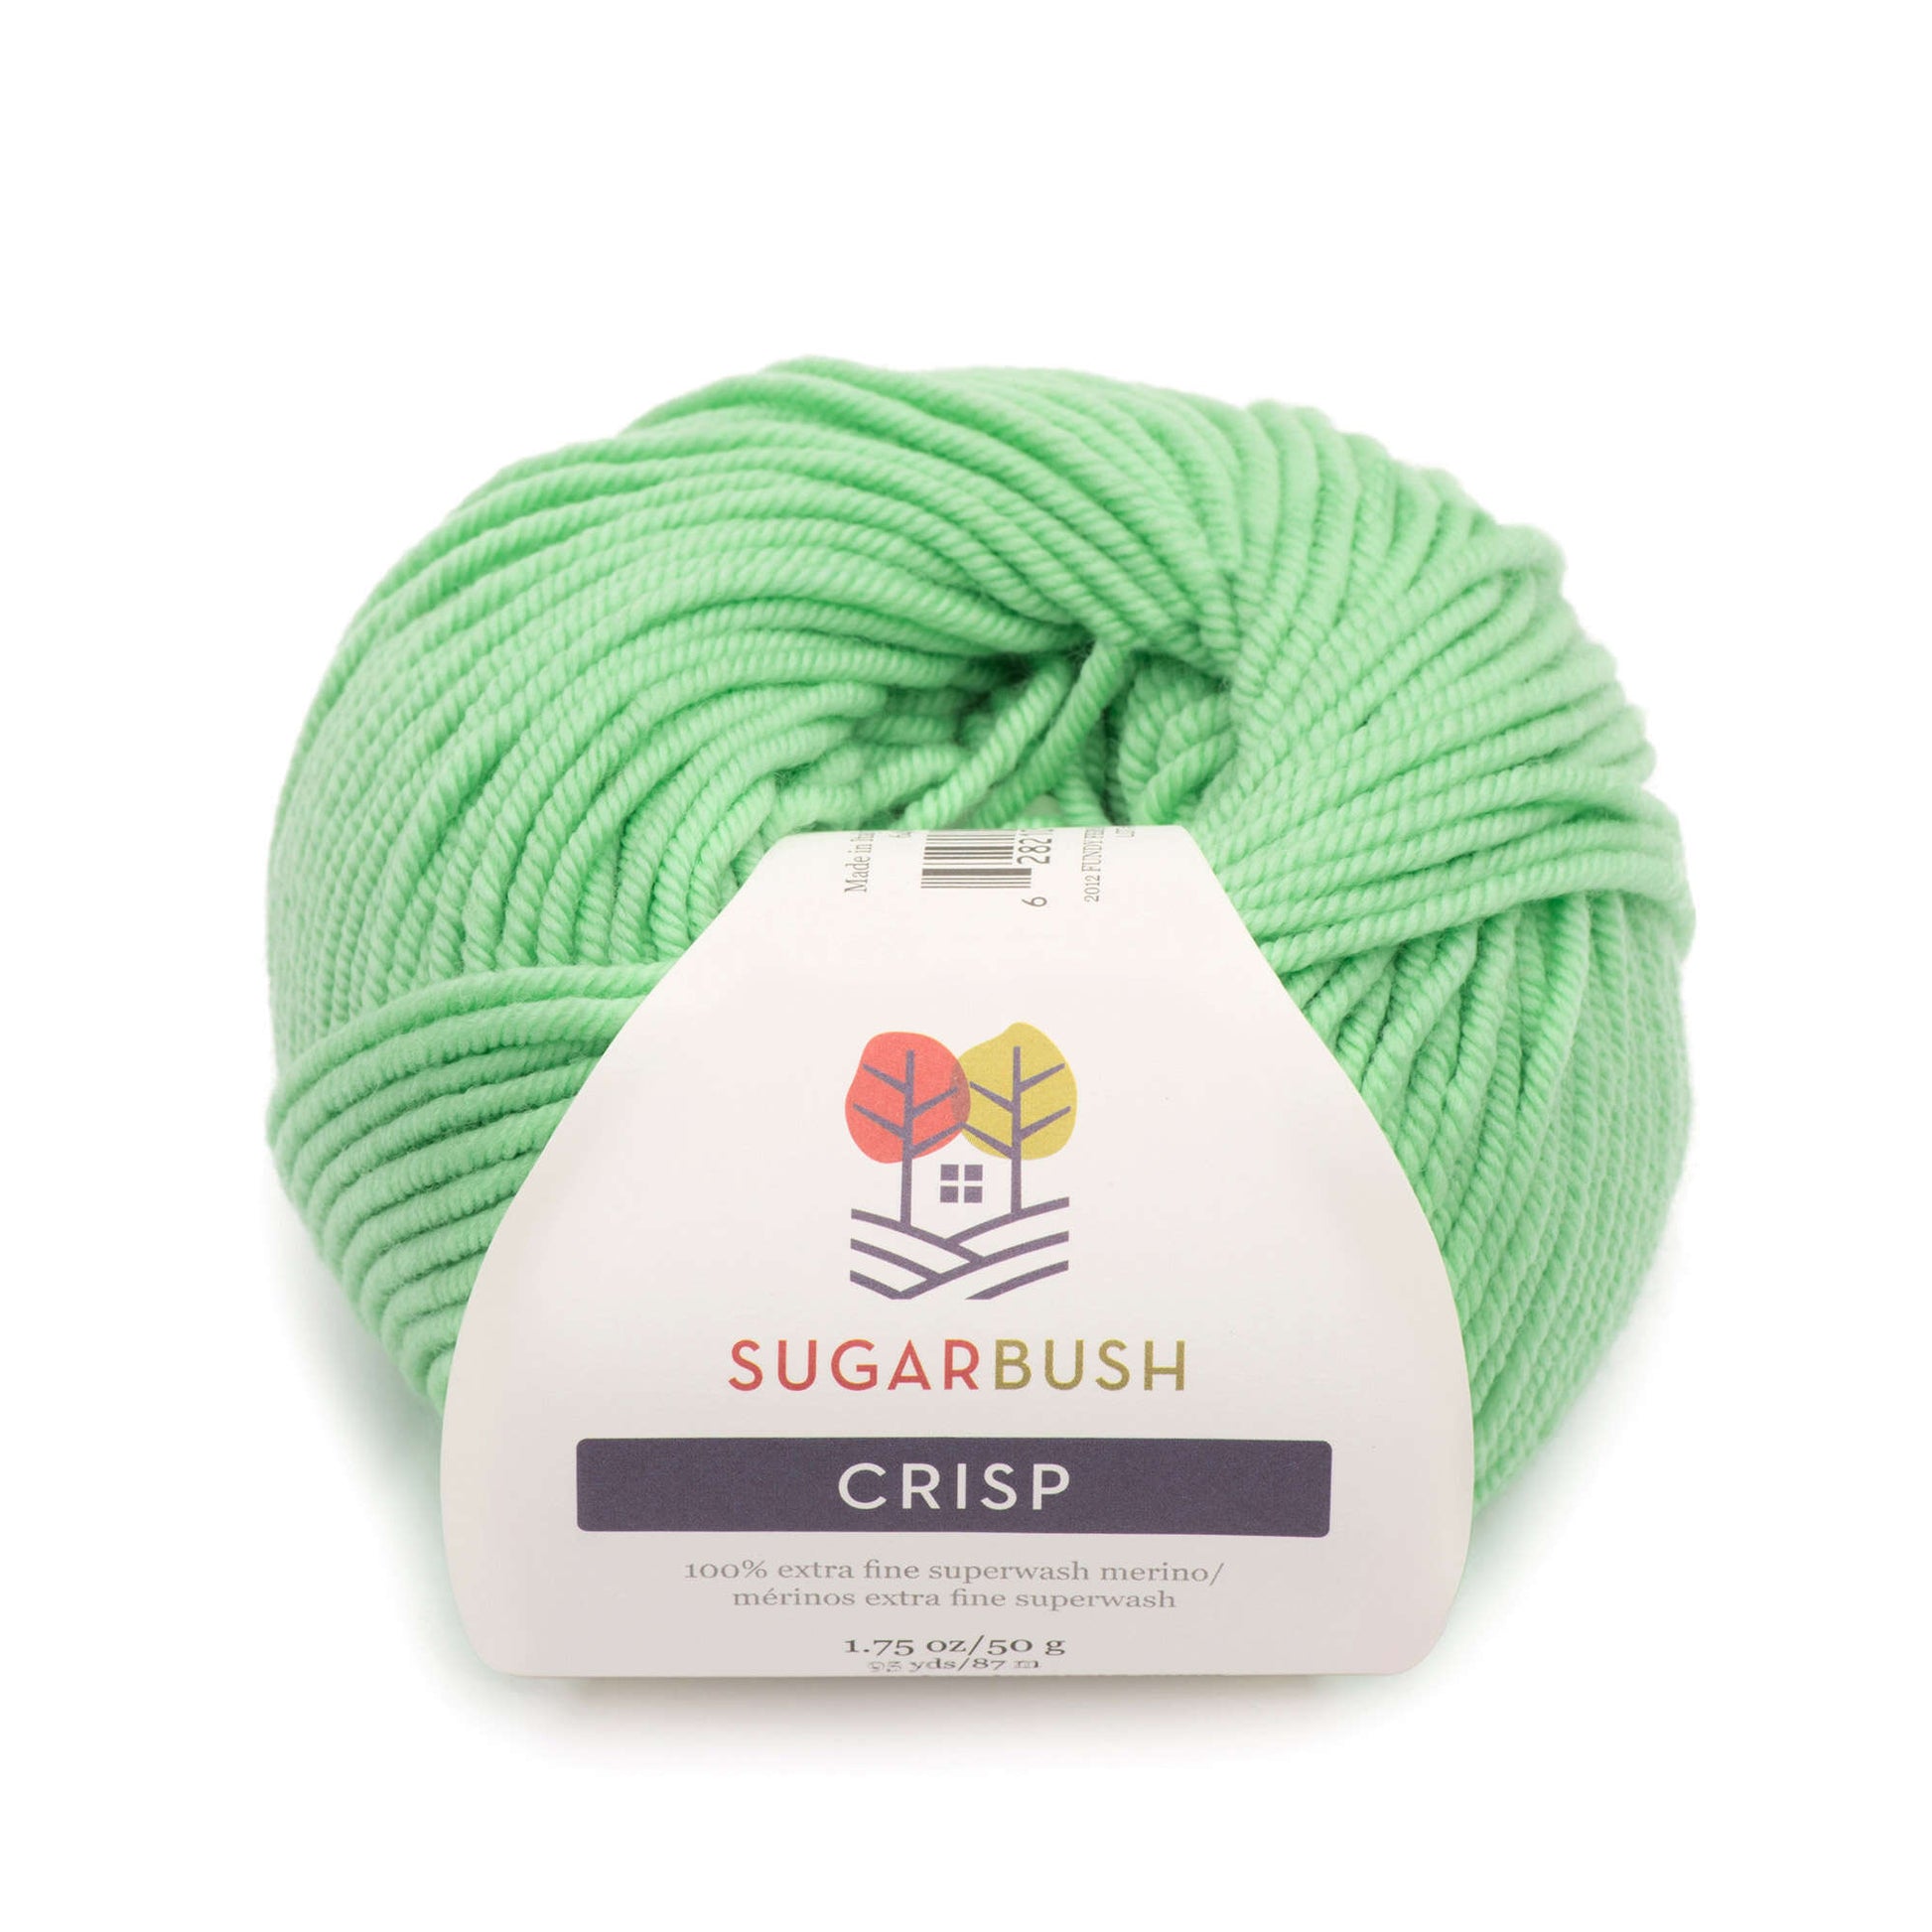 Sugar Bush Crisp Yarn - Discontinued